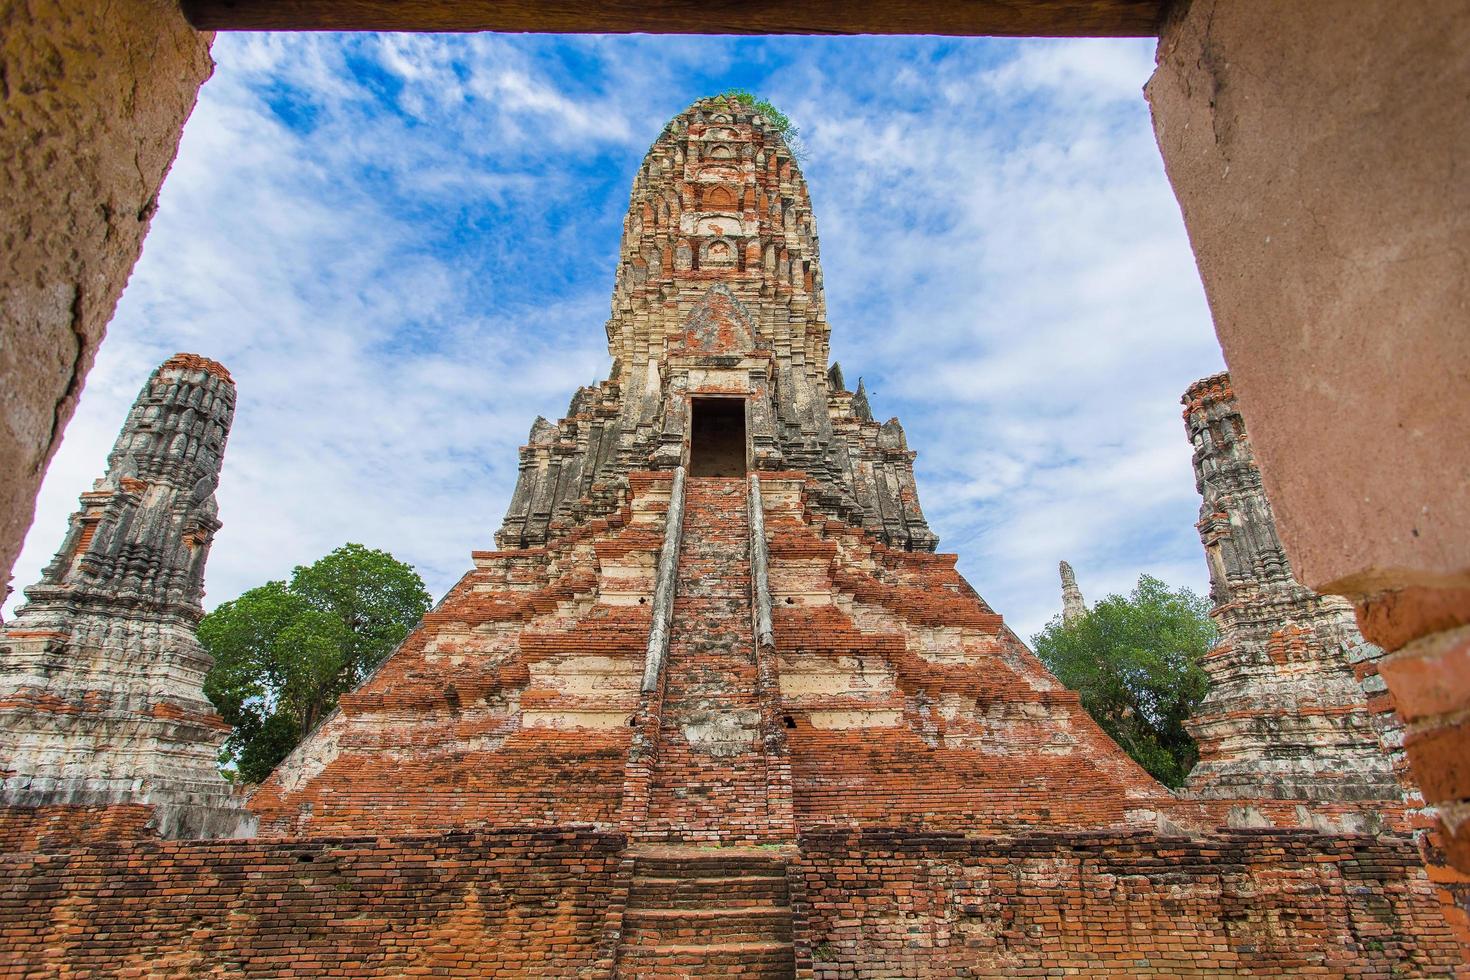 en gammal pagod byggd av förstörda tegelstenar belägen utomhus i wat chaiwatthanaram är en stor turistattraktion i provinsen Phra Nakhon si ayutthaya, Thailand foto